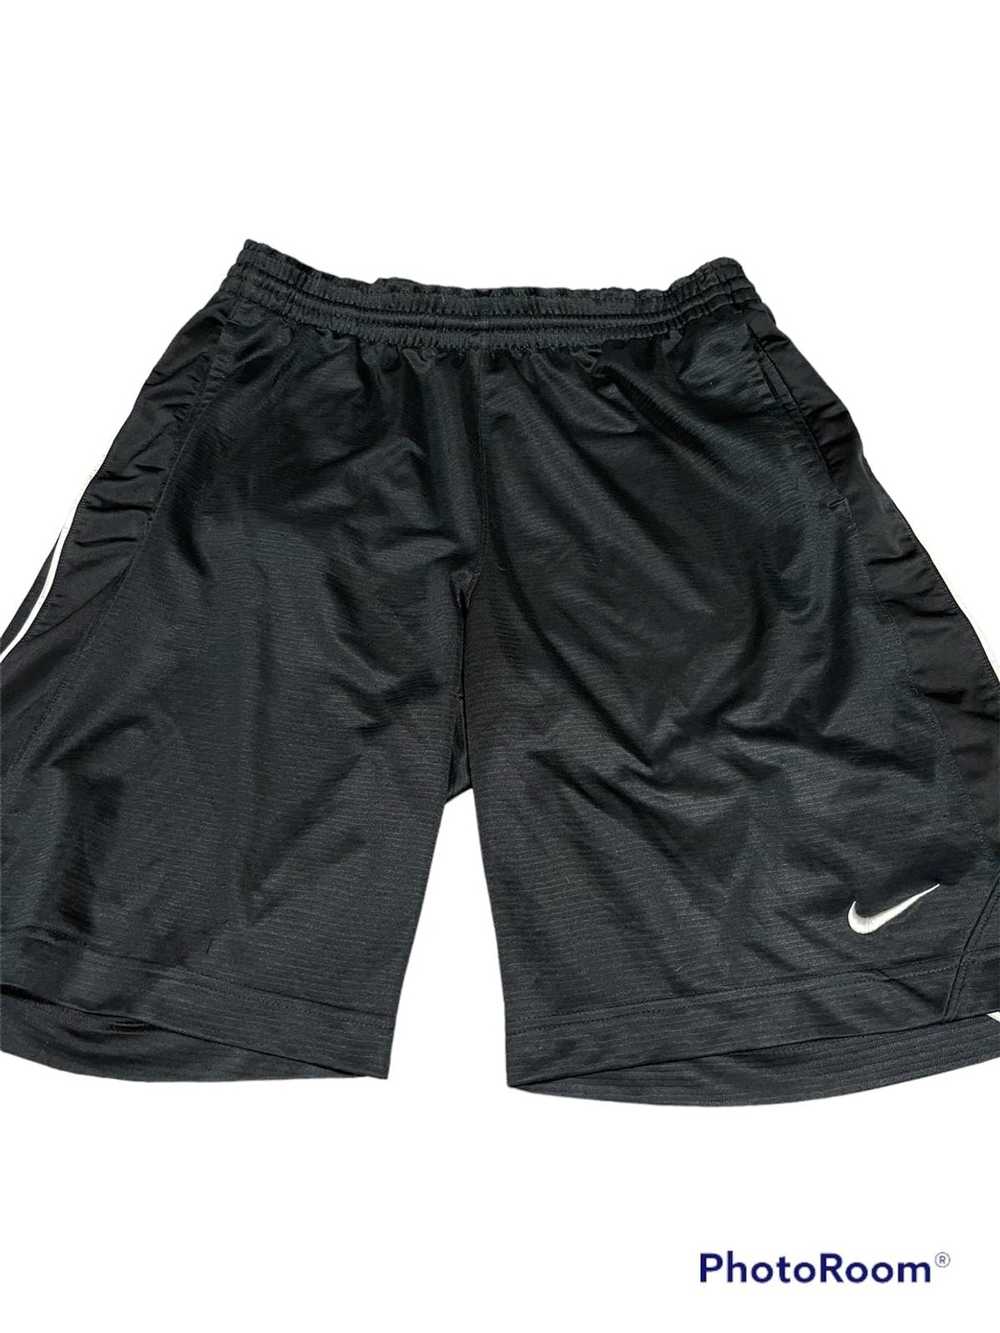 Nike Nike Athletic Basketball Shorts - image 2